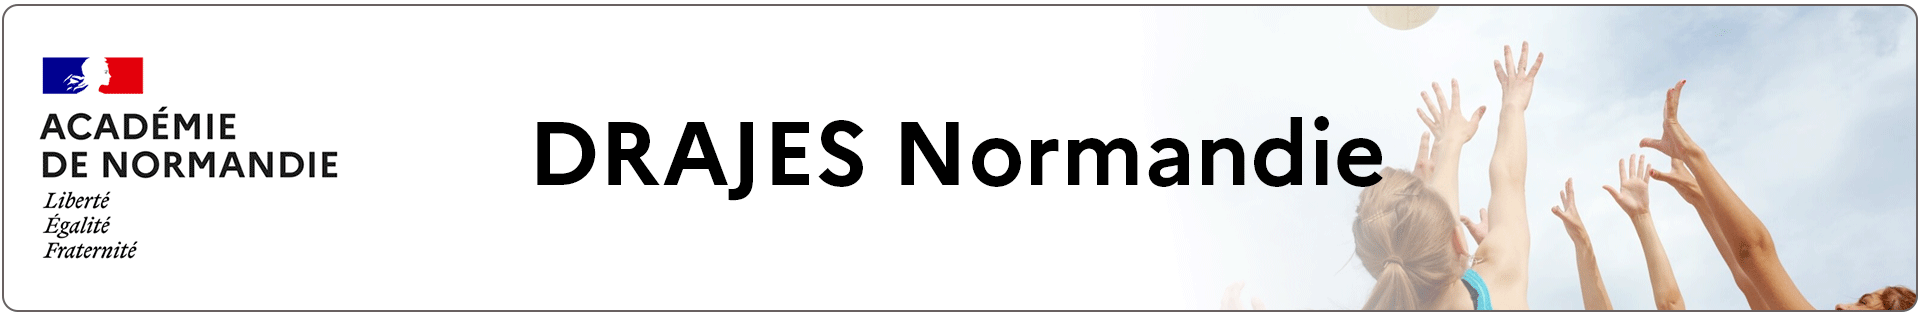 Bannière DRAJES Normandie